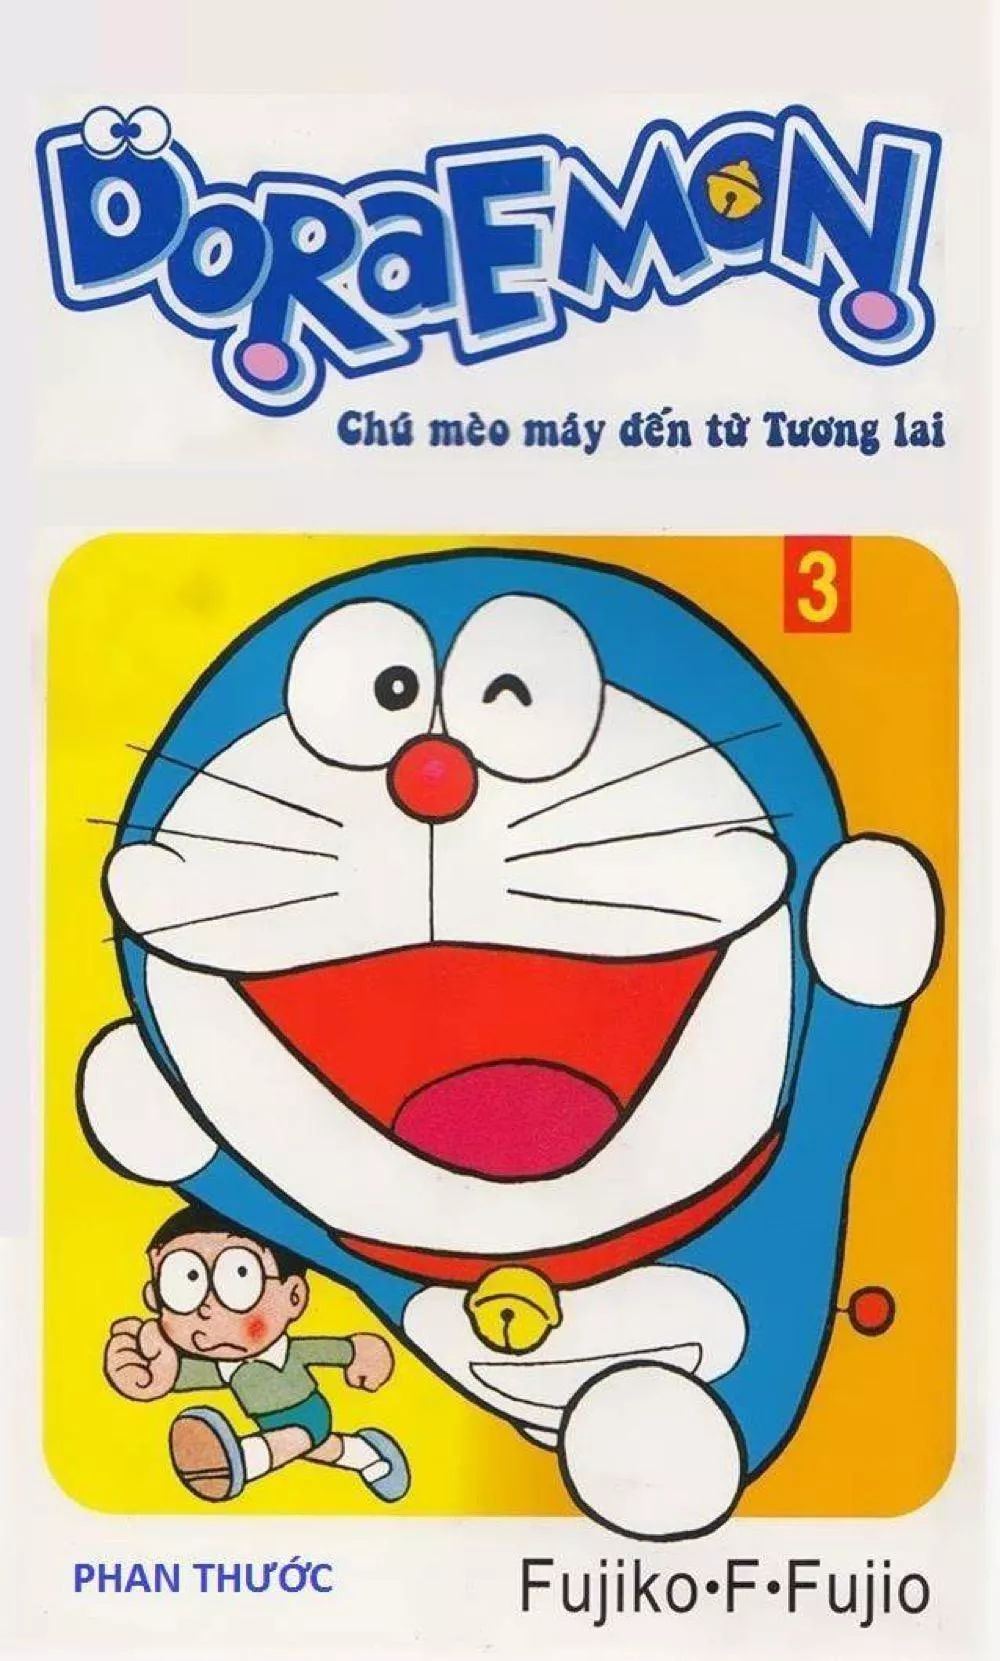 Những tình tiết phép màu trong Doraemon Tập 3 sẽ khiến bạn thích thú đến ngỡ ngàng. Mối quan hệ giữa Nobita và Doraemon đã trở nên gần hơn và đáng yêu hơn khi cùng nhau trải qua những cuộc phiêu lưu. Hãy nhìn vào hình ảnh để thấy rõ được những tình tiết đầy thú vị trong truyện tranh này.